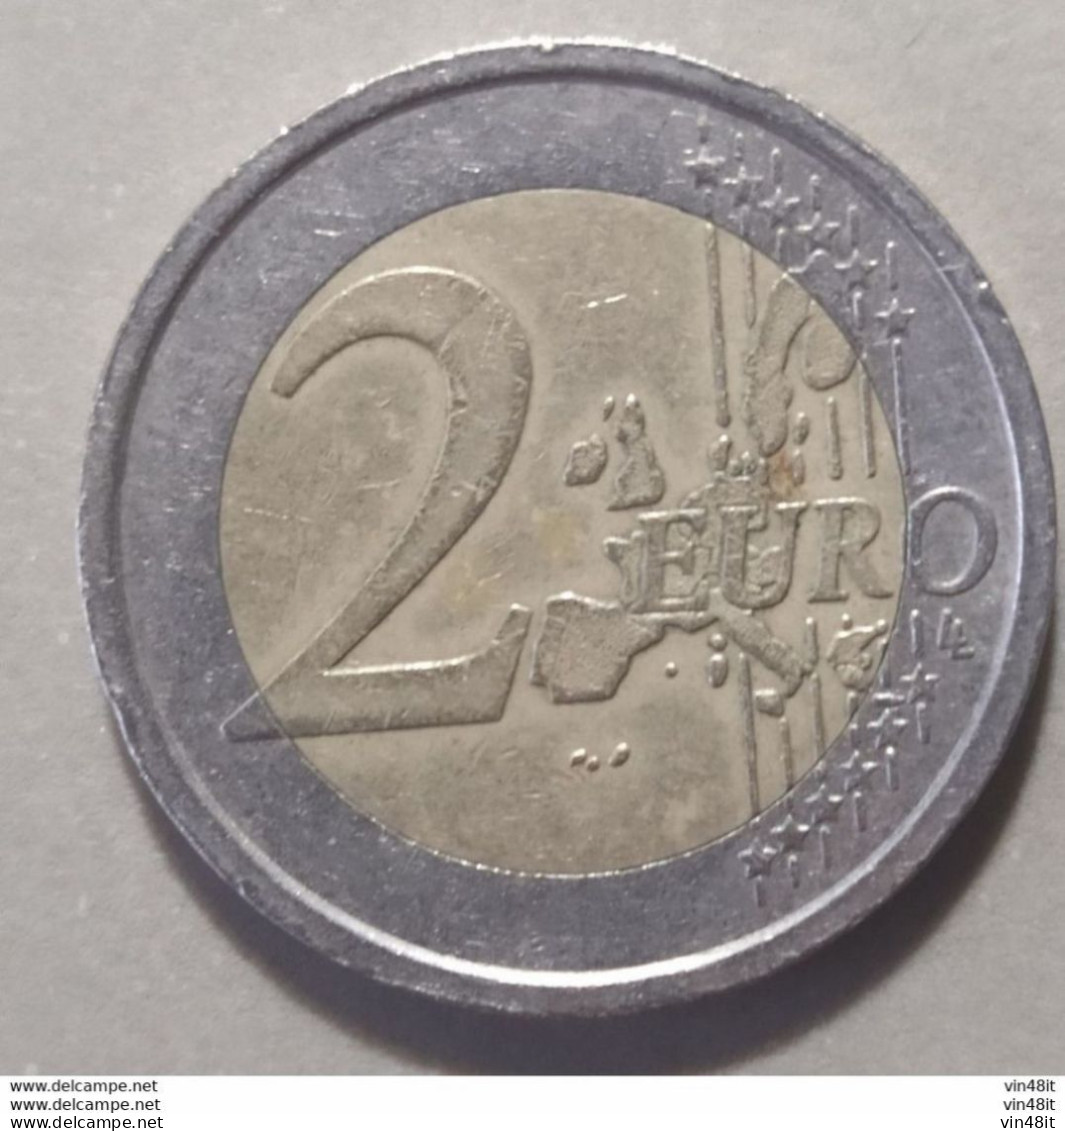 2014 -  SLOVENIA - MONETA IN EURO -  (COMMEMORATIVA)  DEL VALORE DI 2,00  EURO -  USATA- - Eslovenia